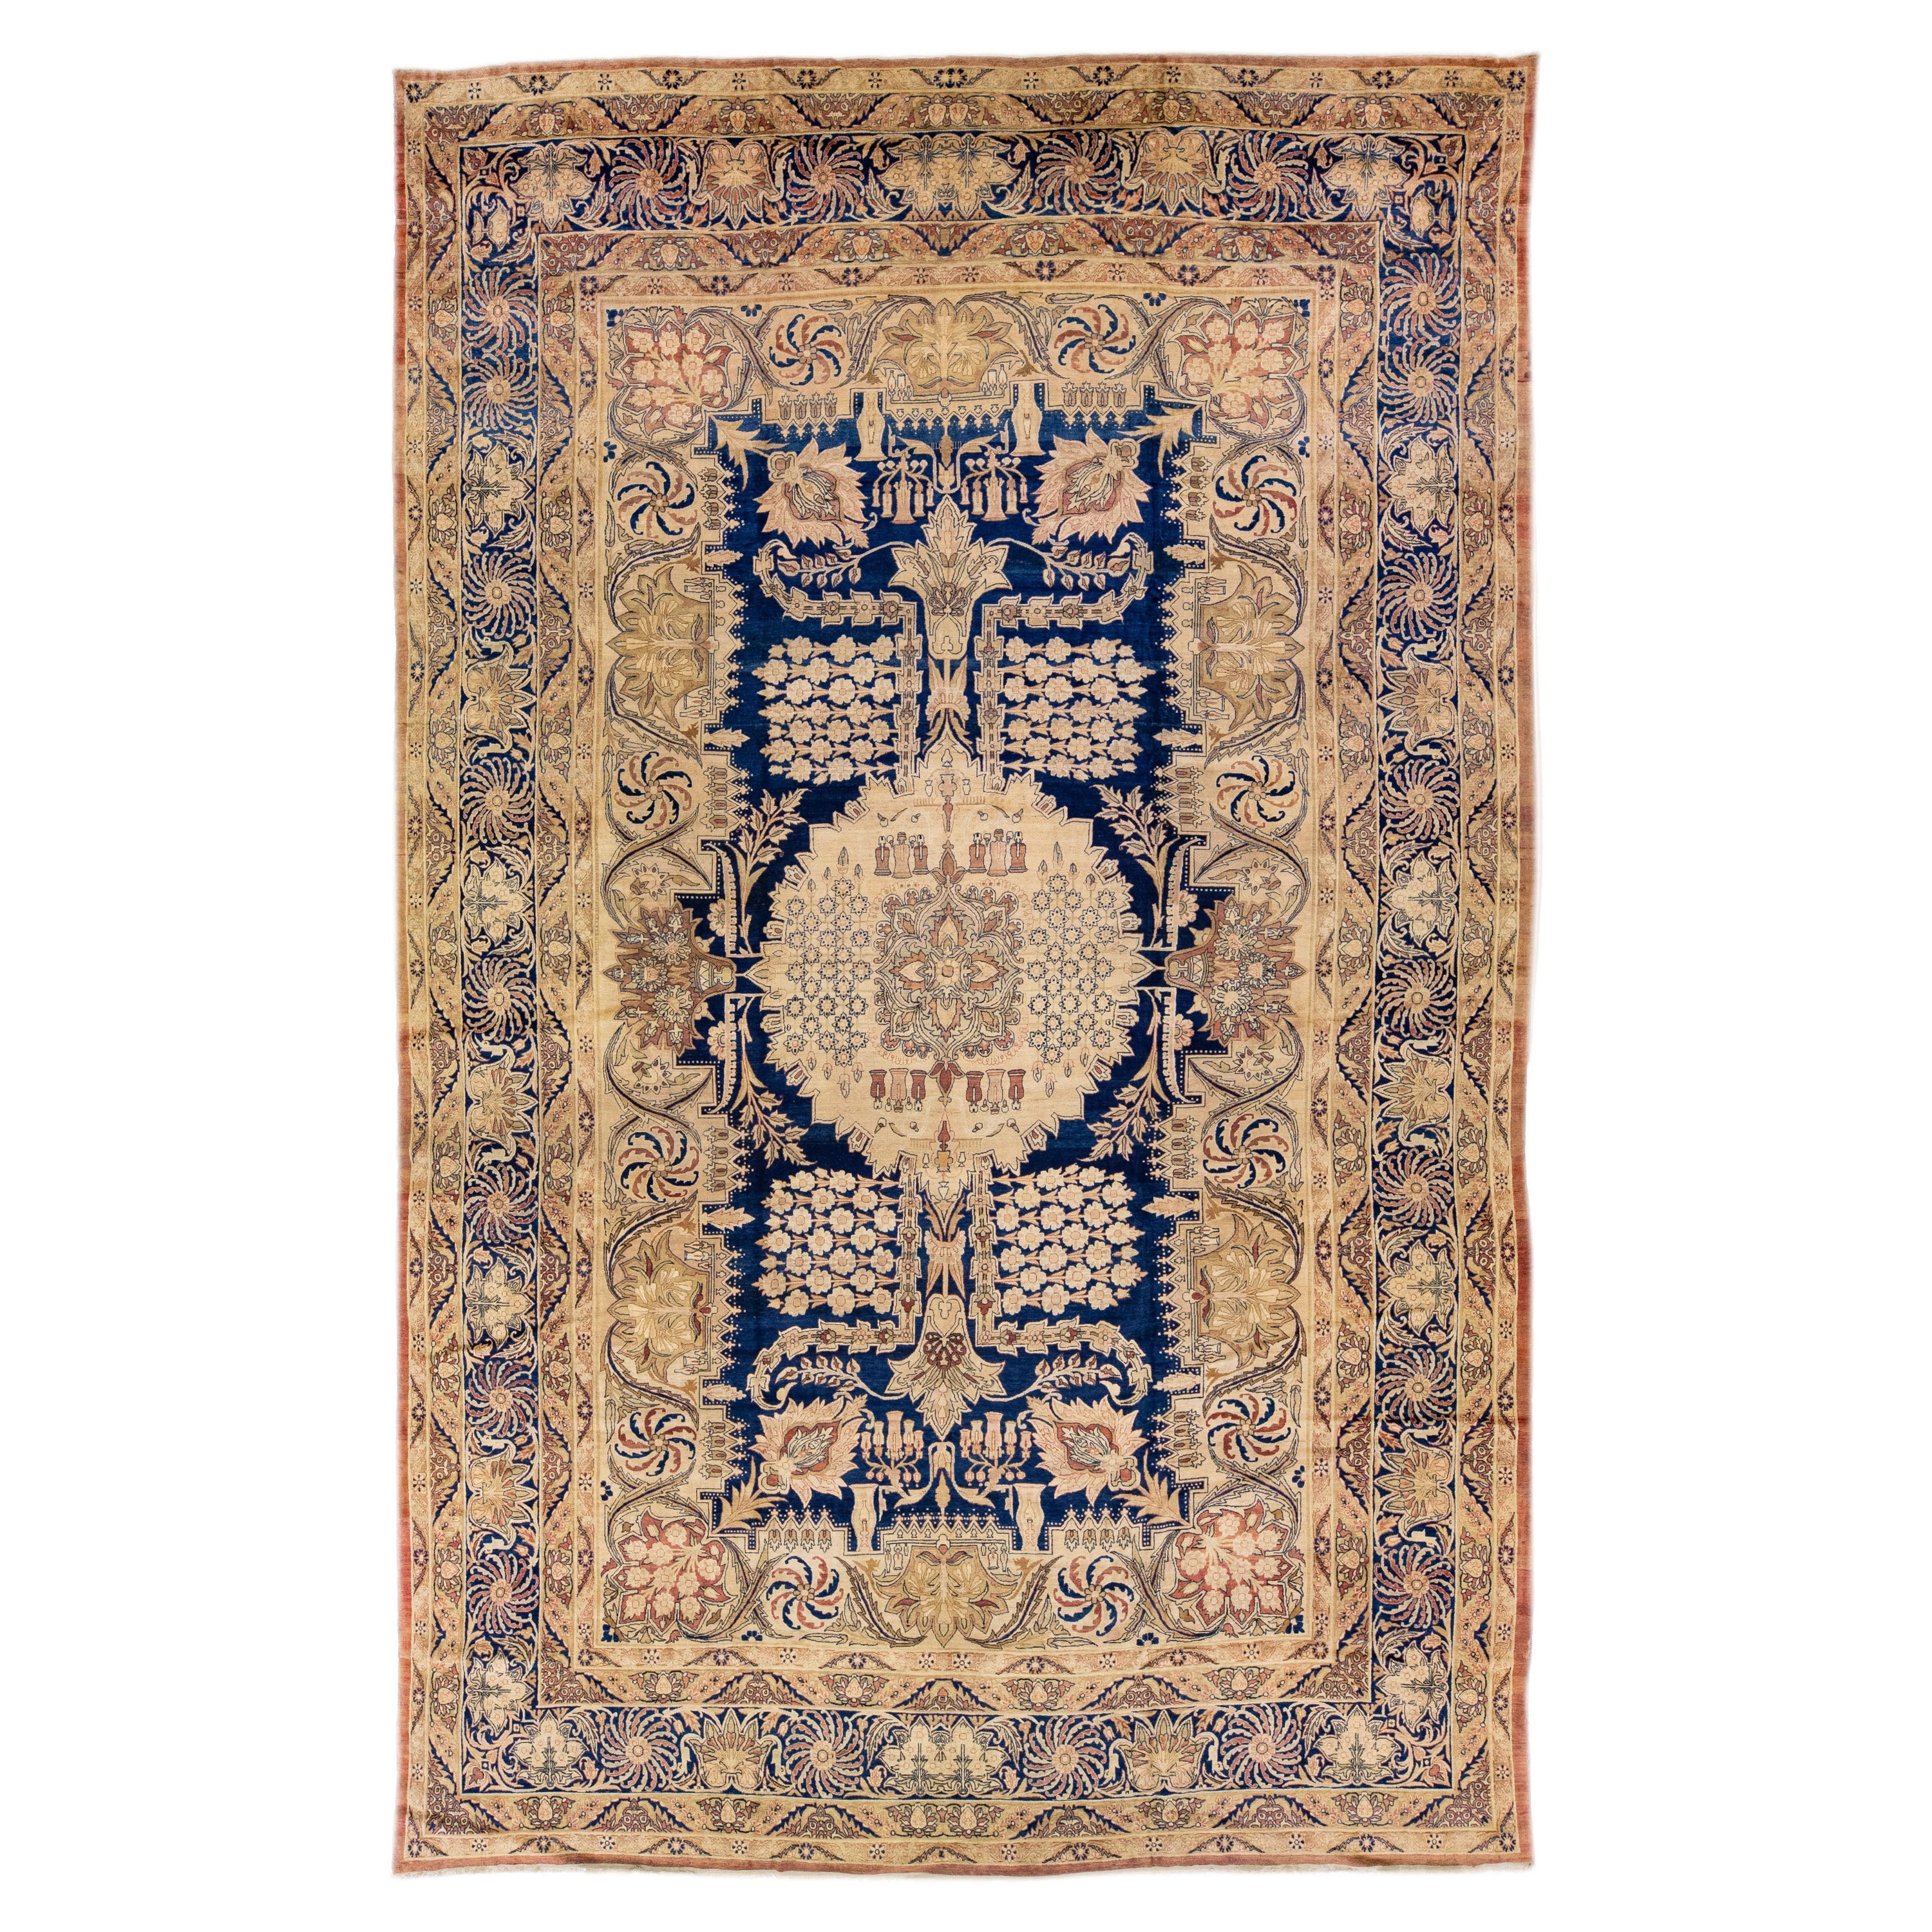 Tapis Kerman ancien en laine persane beige et bleu, fait à la main, avec motif sur toute sa surface